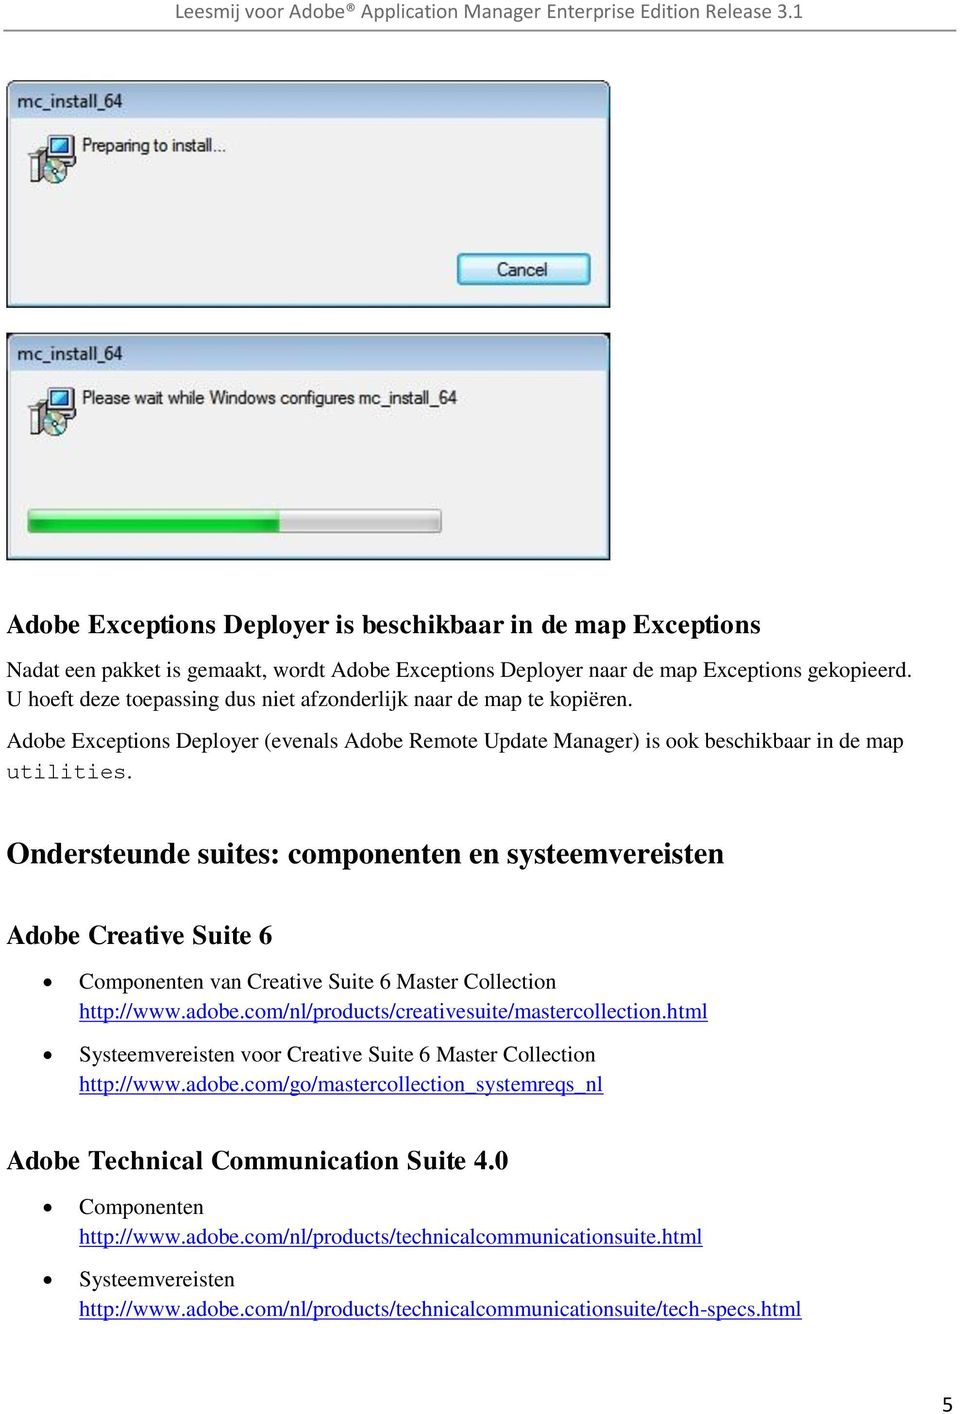 Ondersteunde suites: componenten en systeemvereisten Adobe Creative Suite 6 Componenten van Creative Suite 6 Master Collection http://www.adobe.com/nl/products/creativesuite/mastercollection.